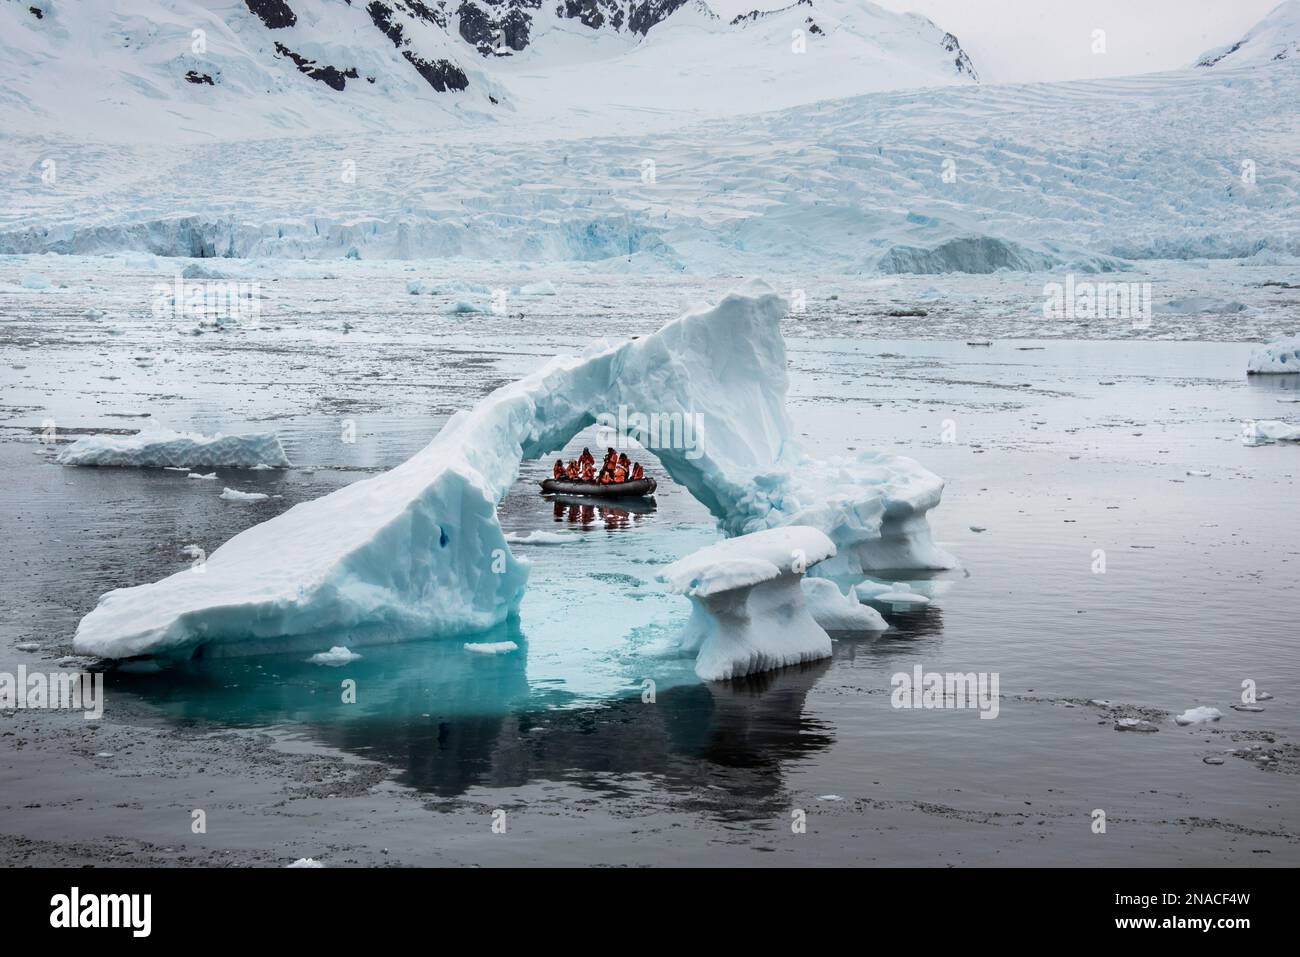 Les visiteurs de l'anse Cierva en Antarctique, qui fait partie de la Terre Graham sur la péninsule antarctique, regardent un fragment d'iceberg en forme d'arc Banque D'Images